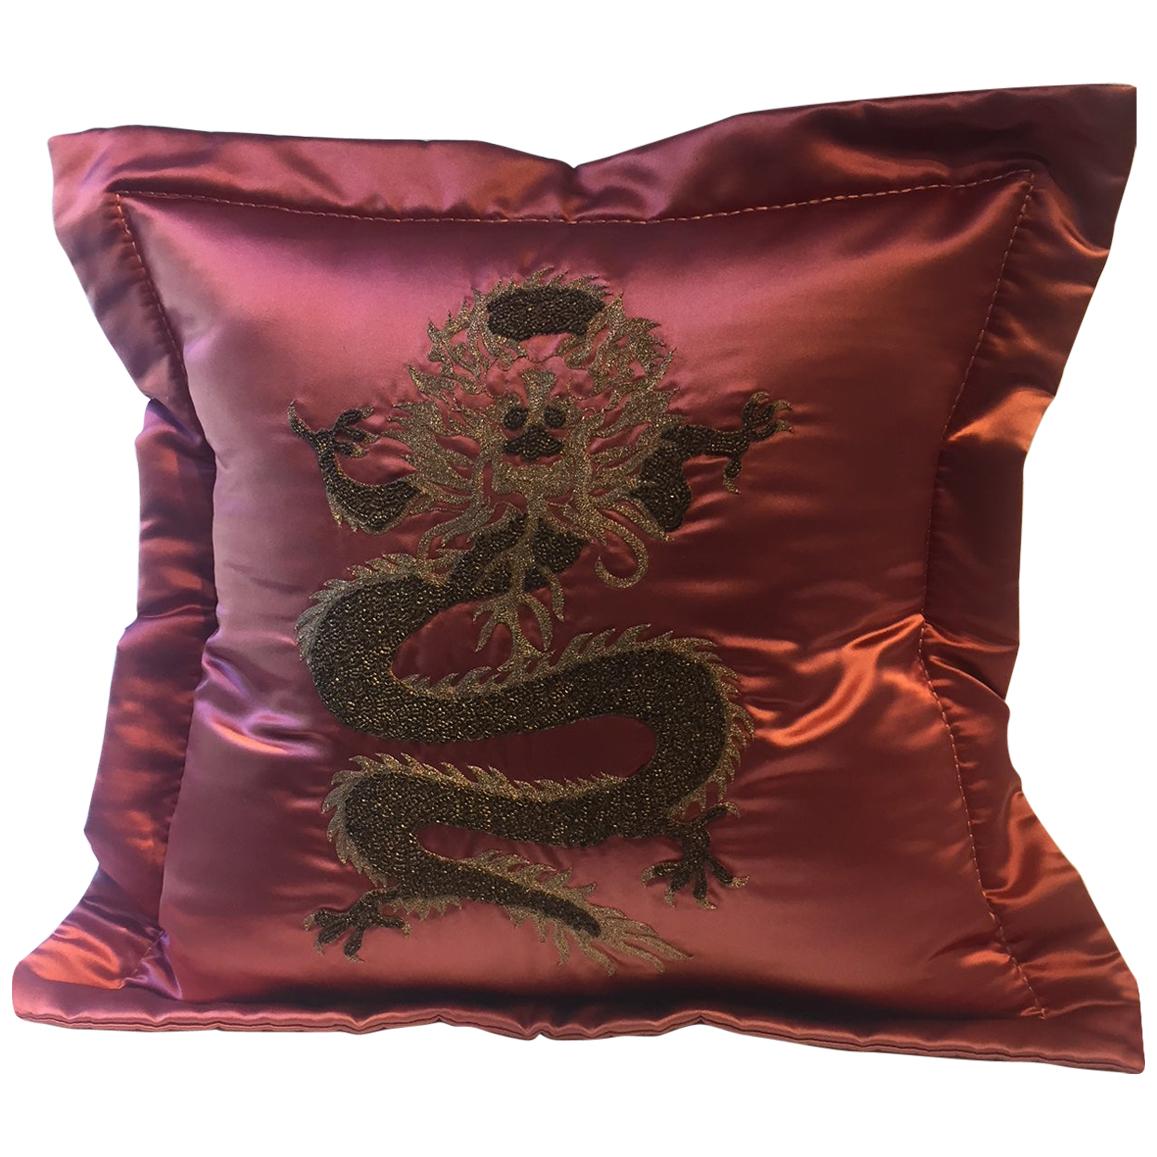 Dragon Design Kissen Seide Farbe Erdbeerrote Handstickerei mit Drachenmuster